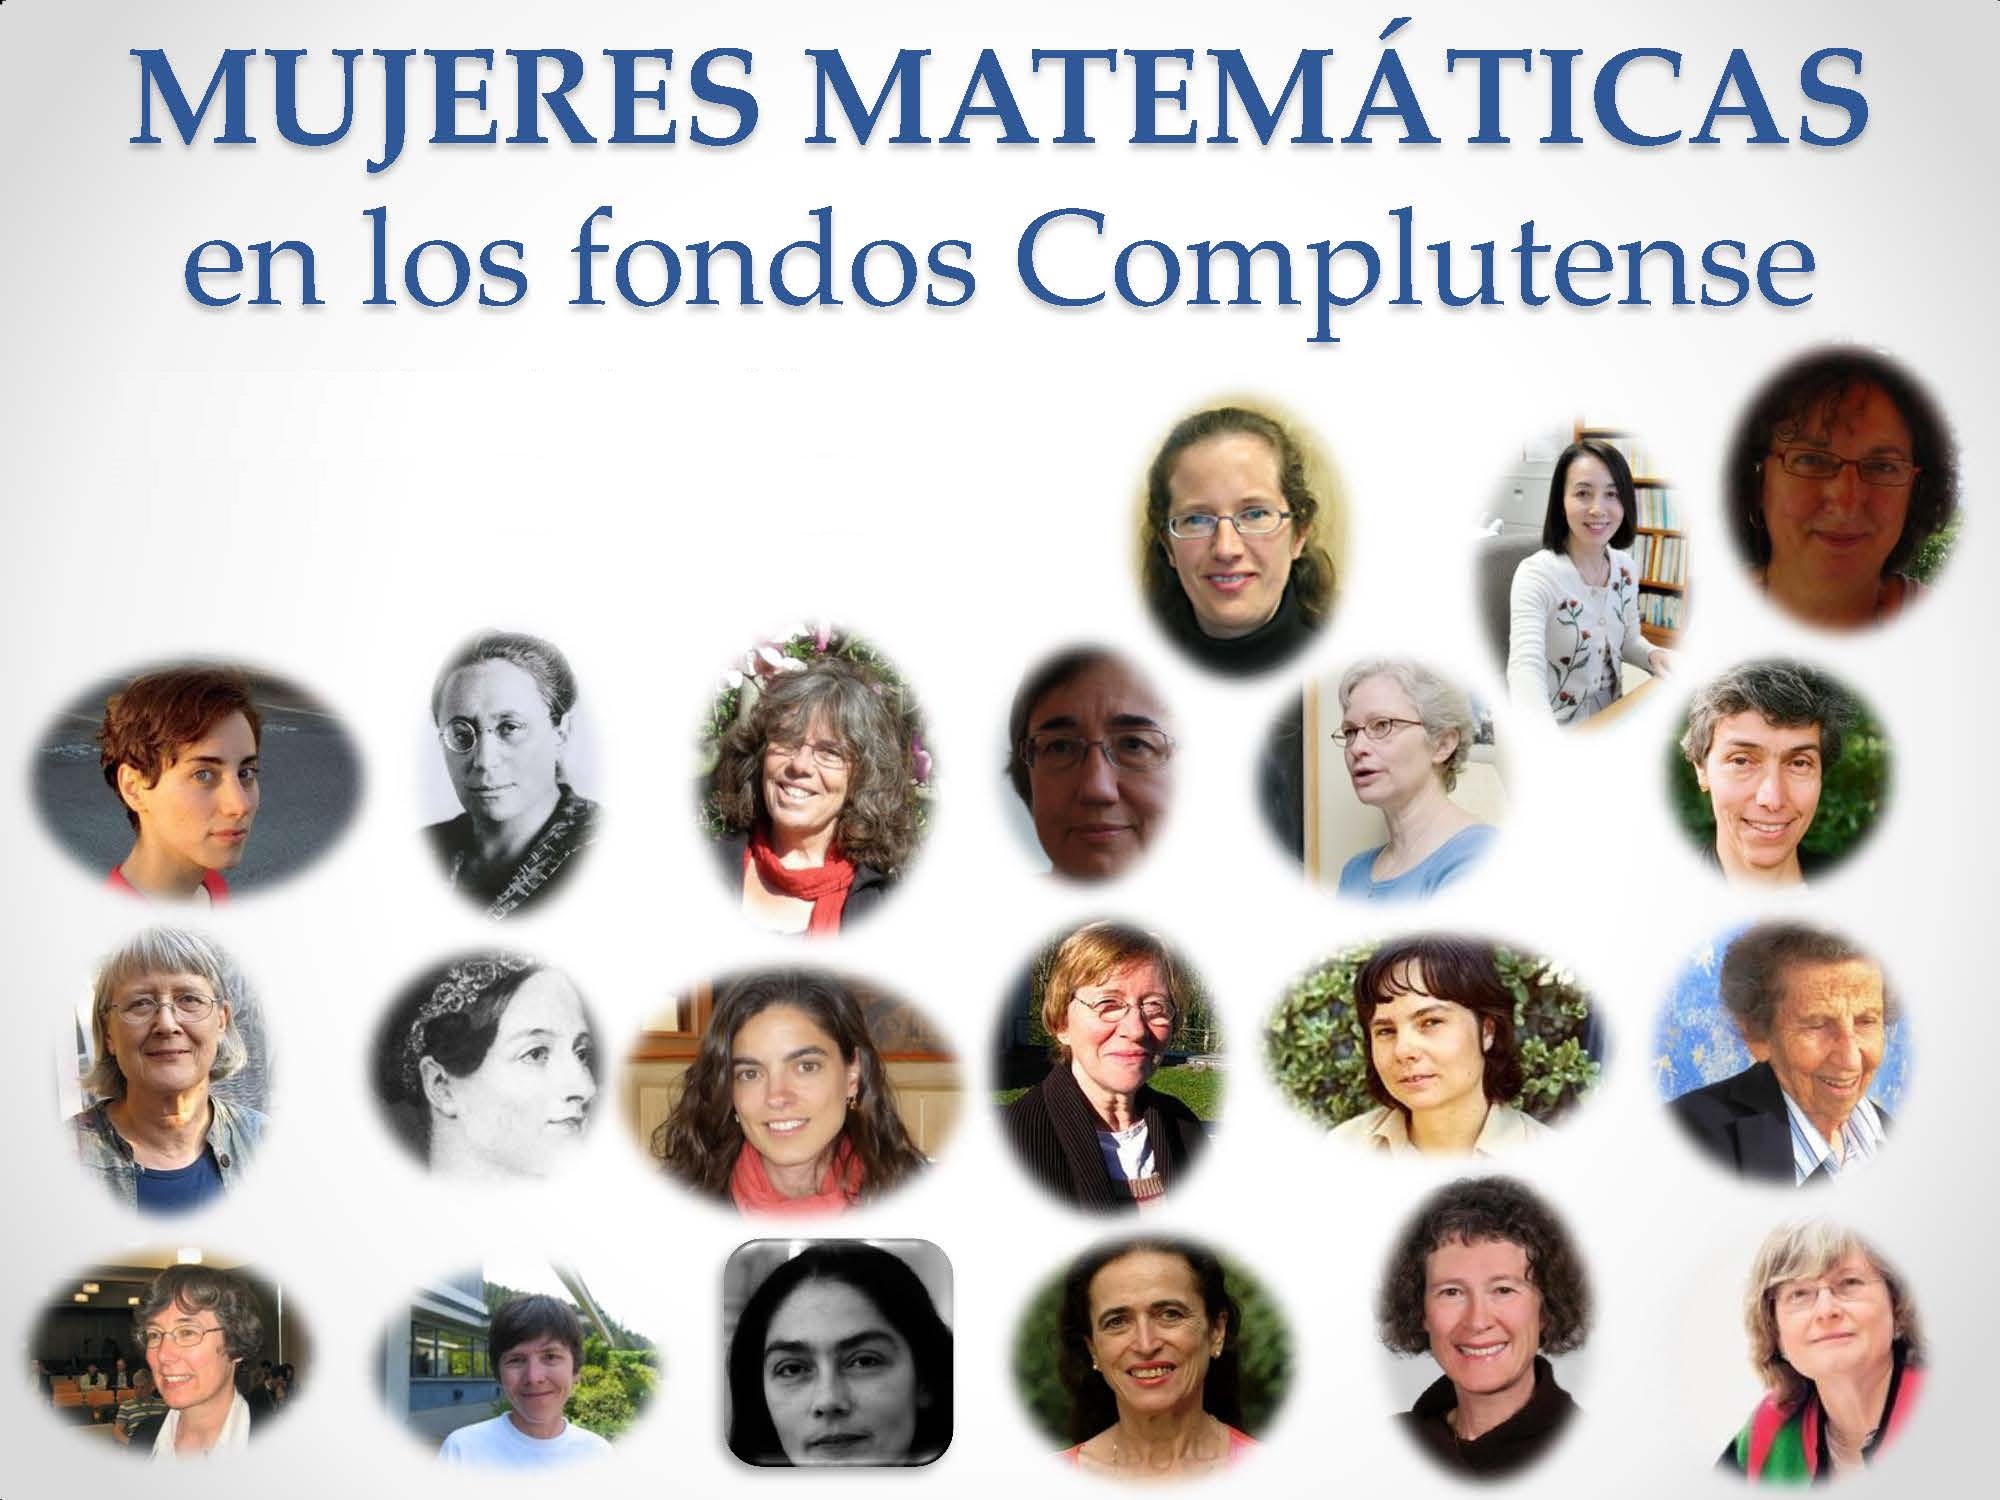 Exposición bibliográfica virtual sobre fondos de mujeres matemáticas en la Biblioteca de la UCM